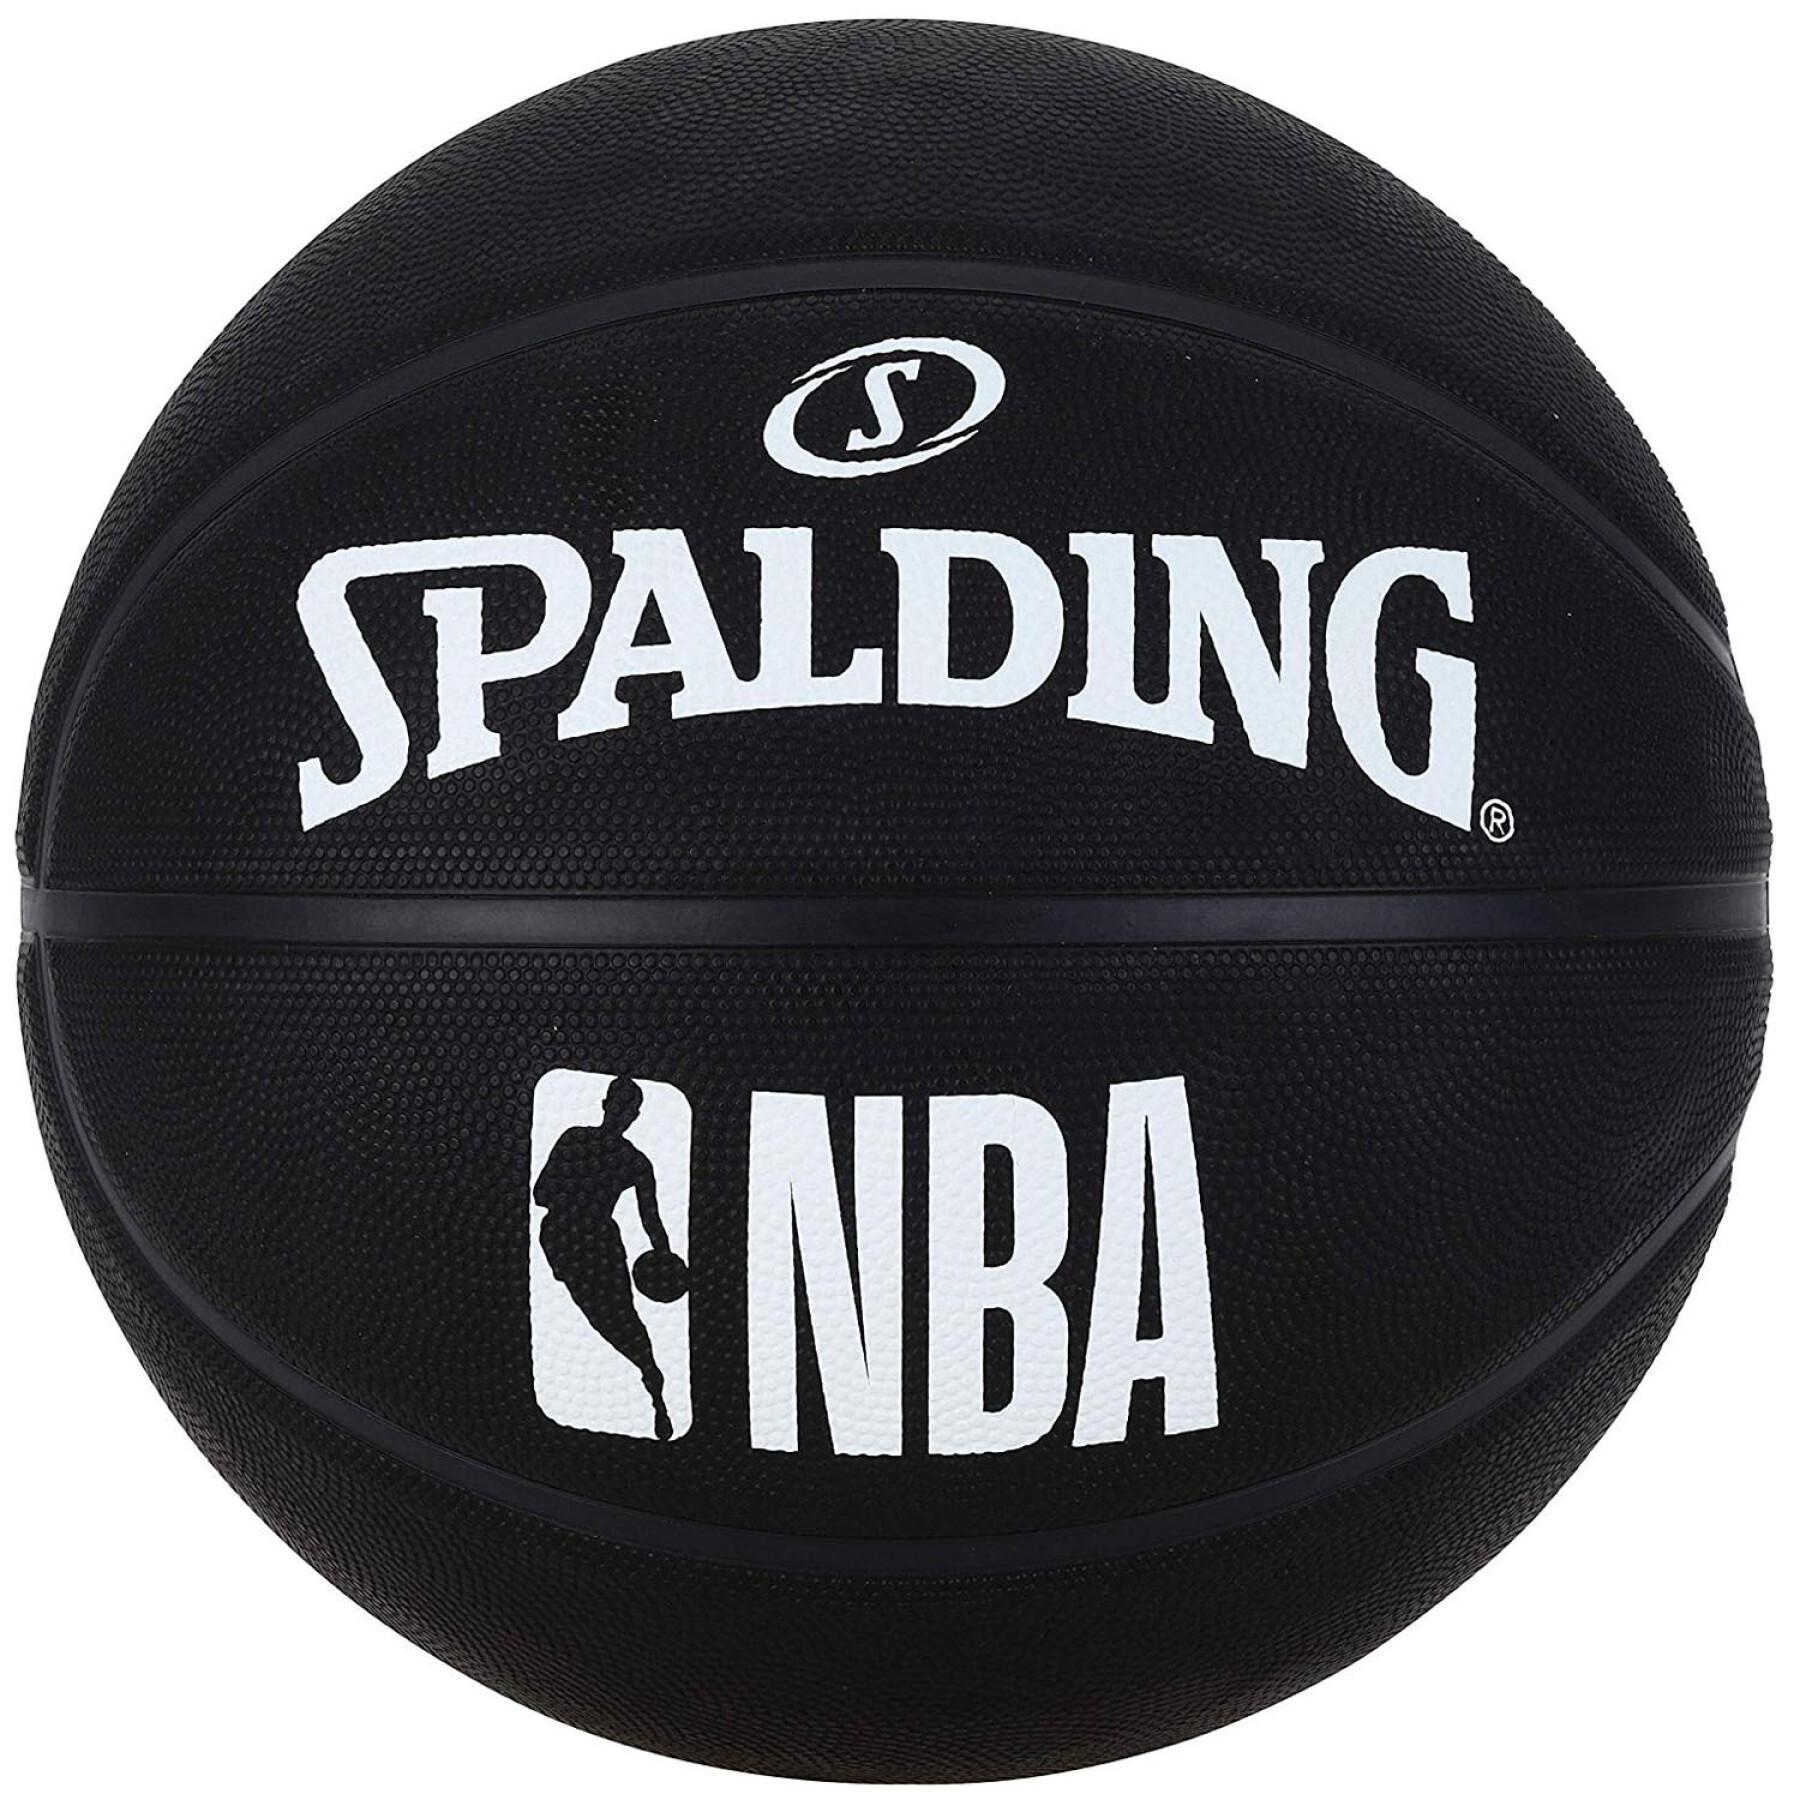 Balão Spalding NBA (83-969z)